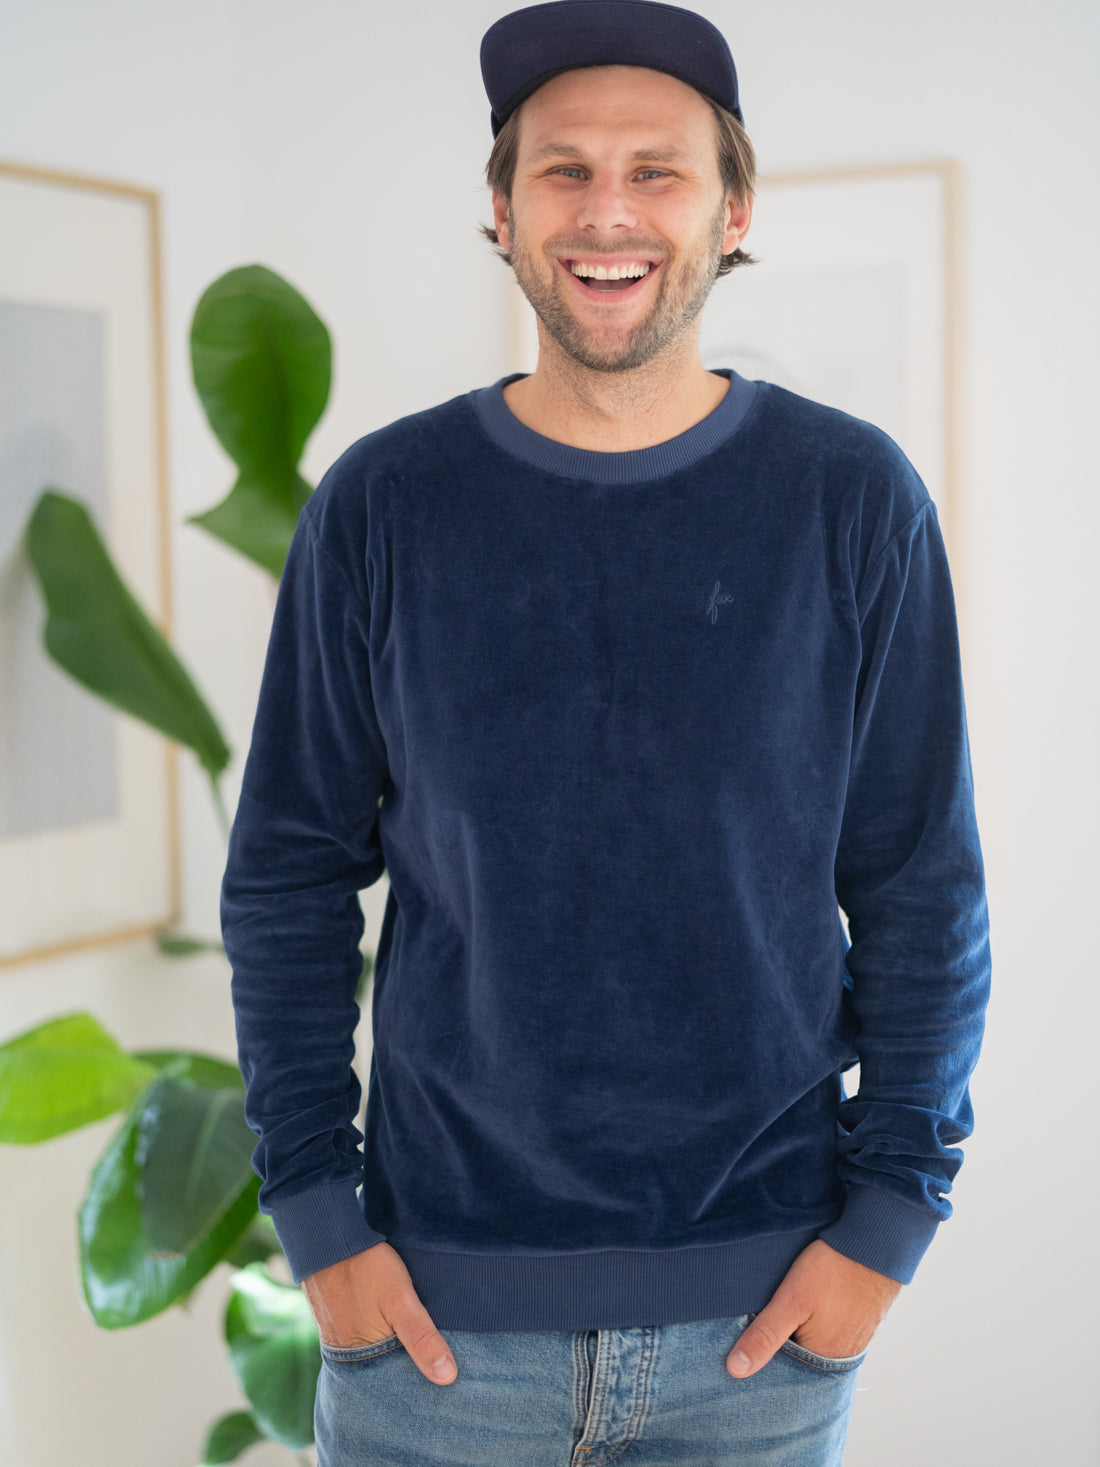 Philipp trägt den nachhaltigen FUXBAU Samt Sweater in navy für Männer aus 100% GOTS zertifizierter Biobaumwolle & made in Portugal.